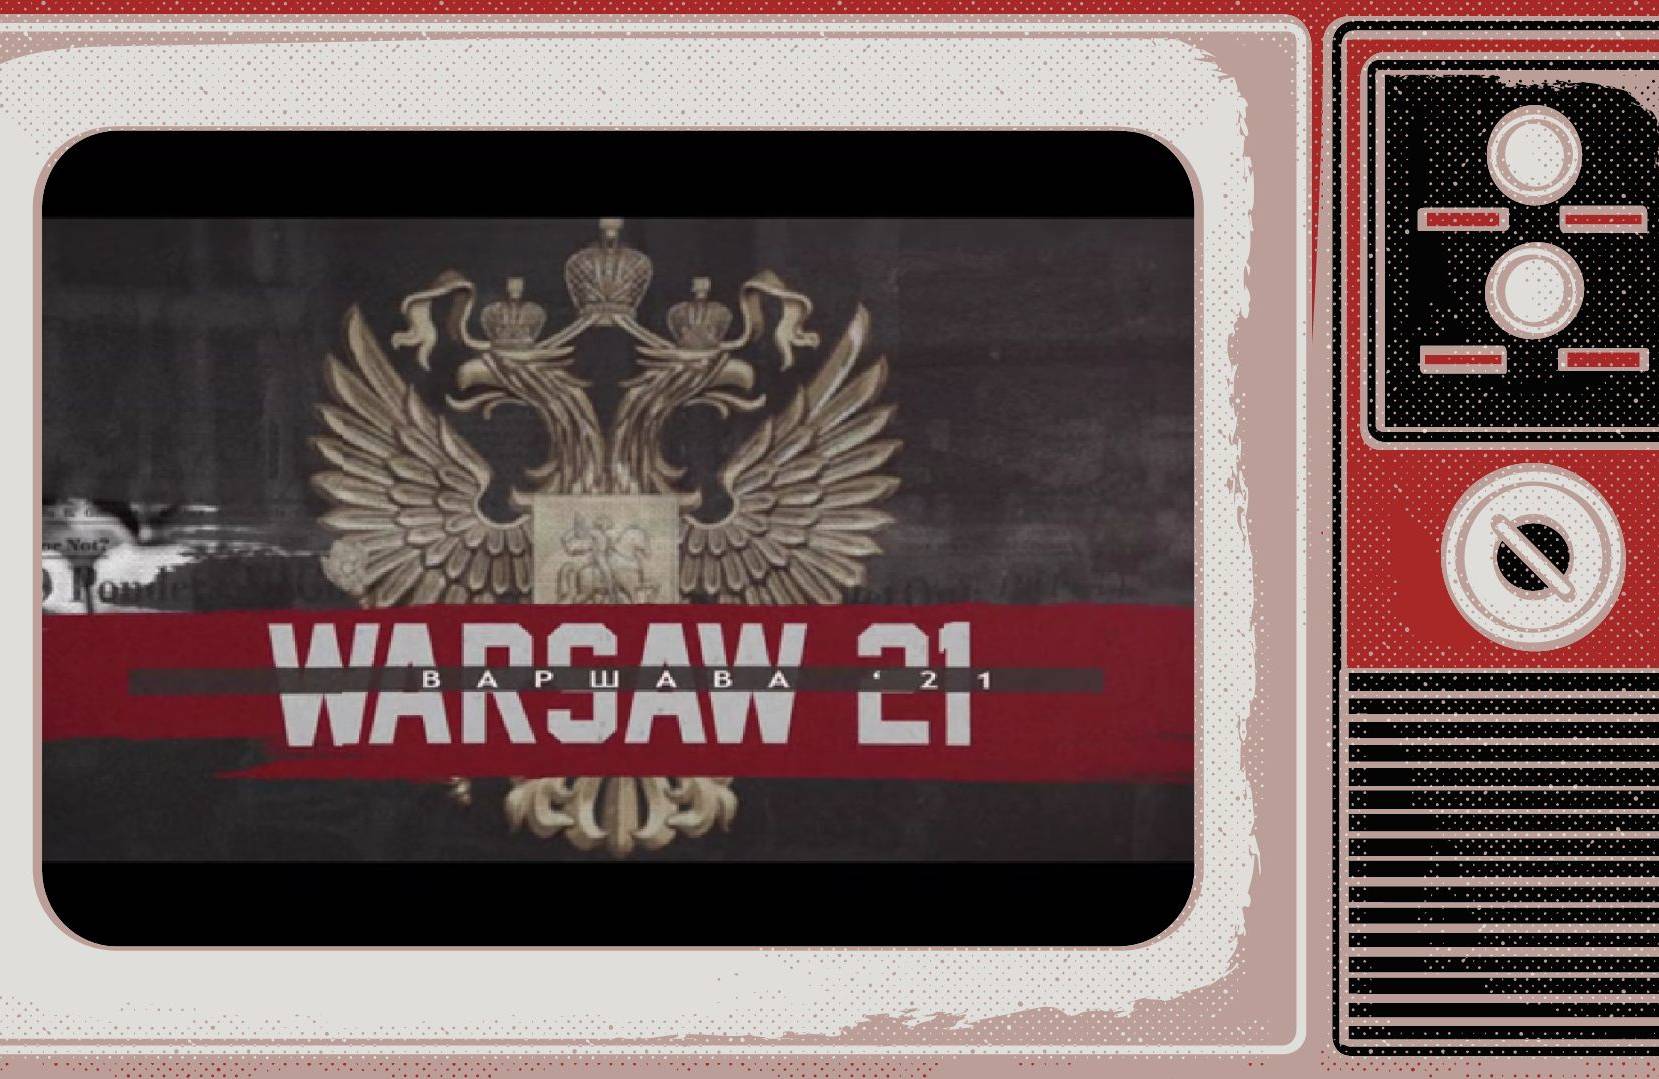 Grafika, W ramce starego telewizora plansza z napisem po angielsku i rosyjsku "Warszawa'21" na tle herbu Rosji